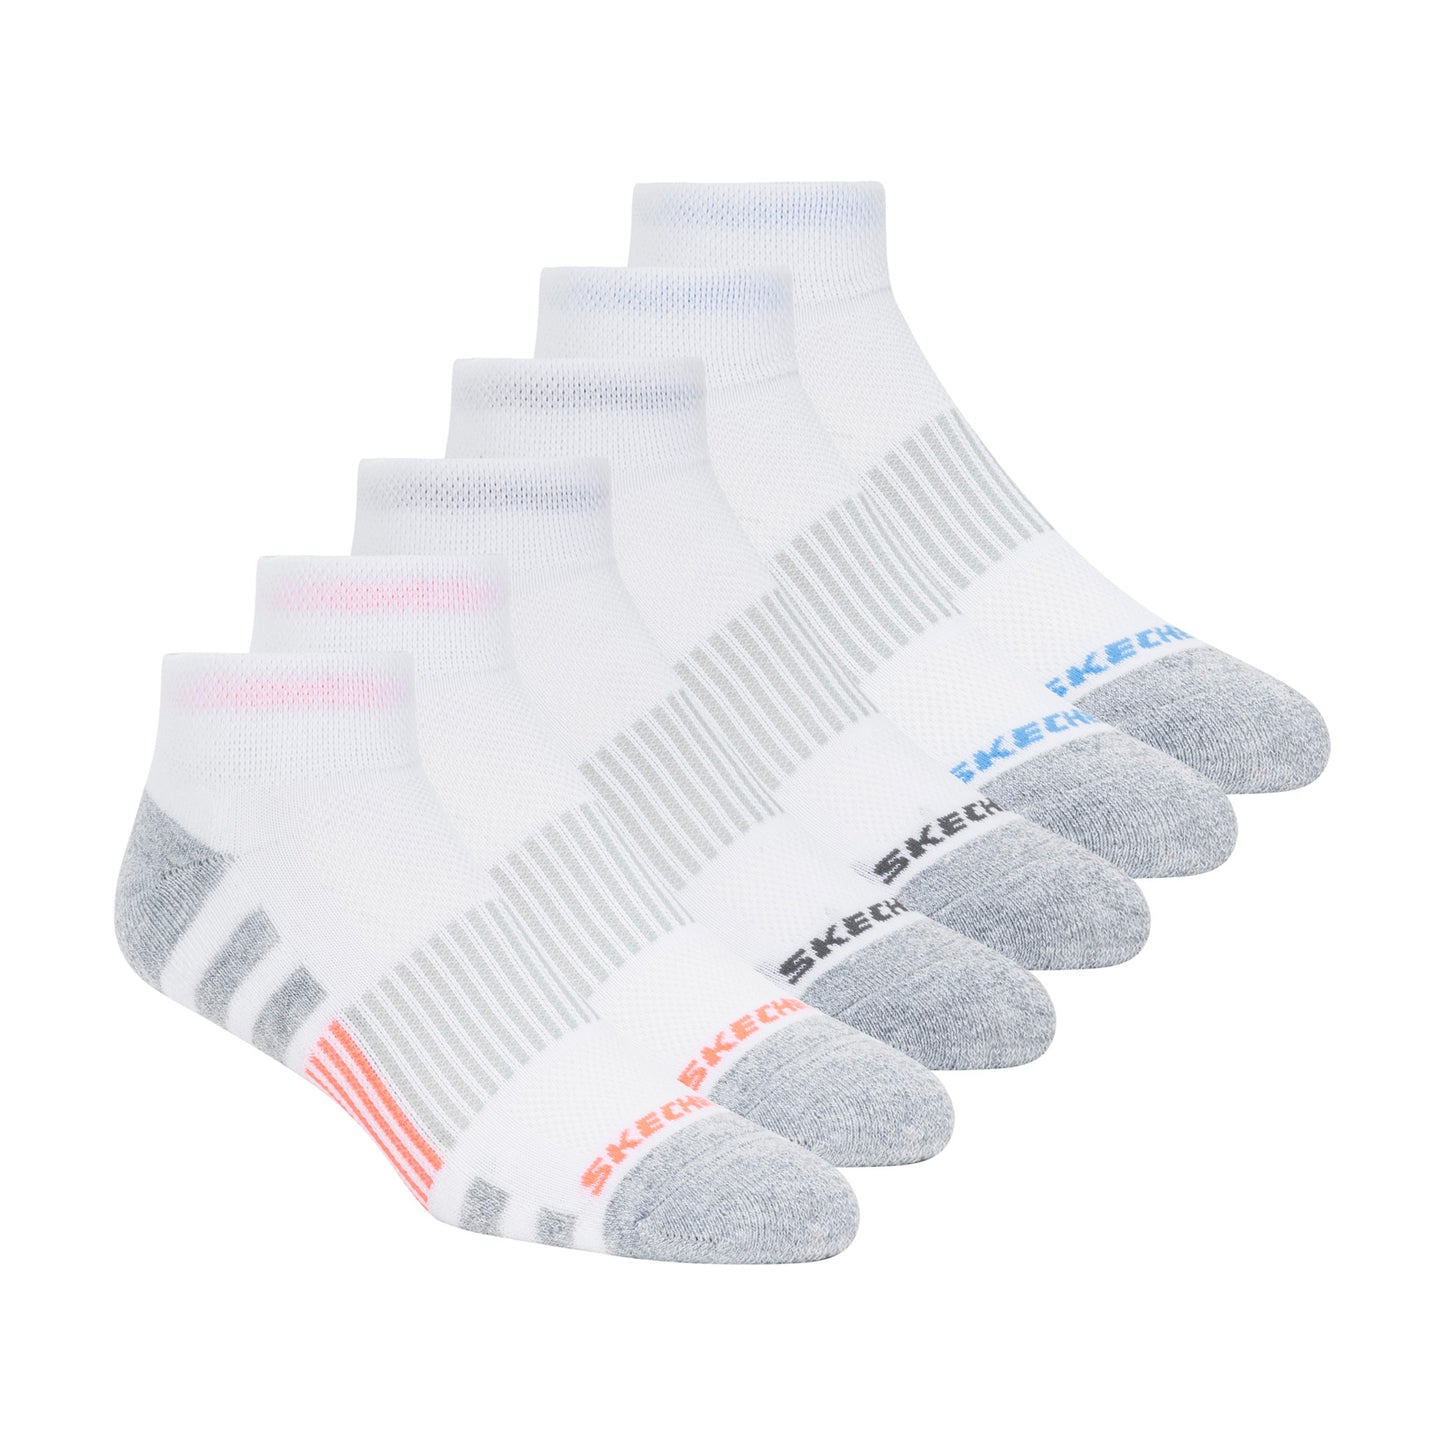 Peltz Shoes  Women’s Skechers Quarter Socks – 6 Pair White Multi S113985-101